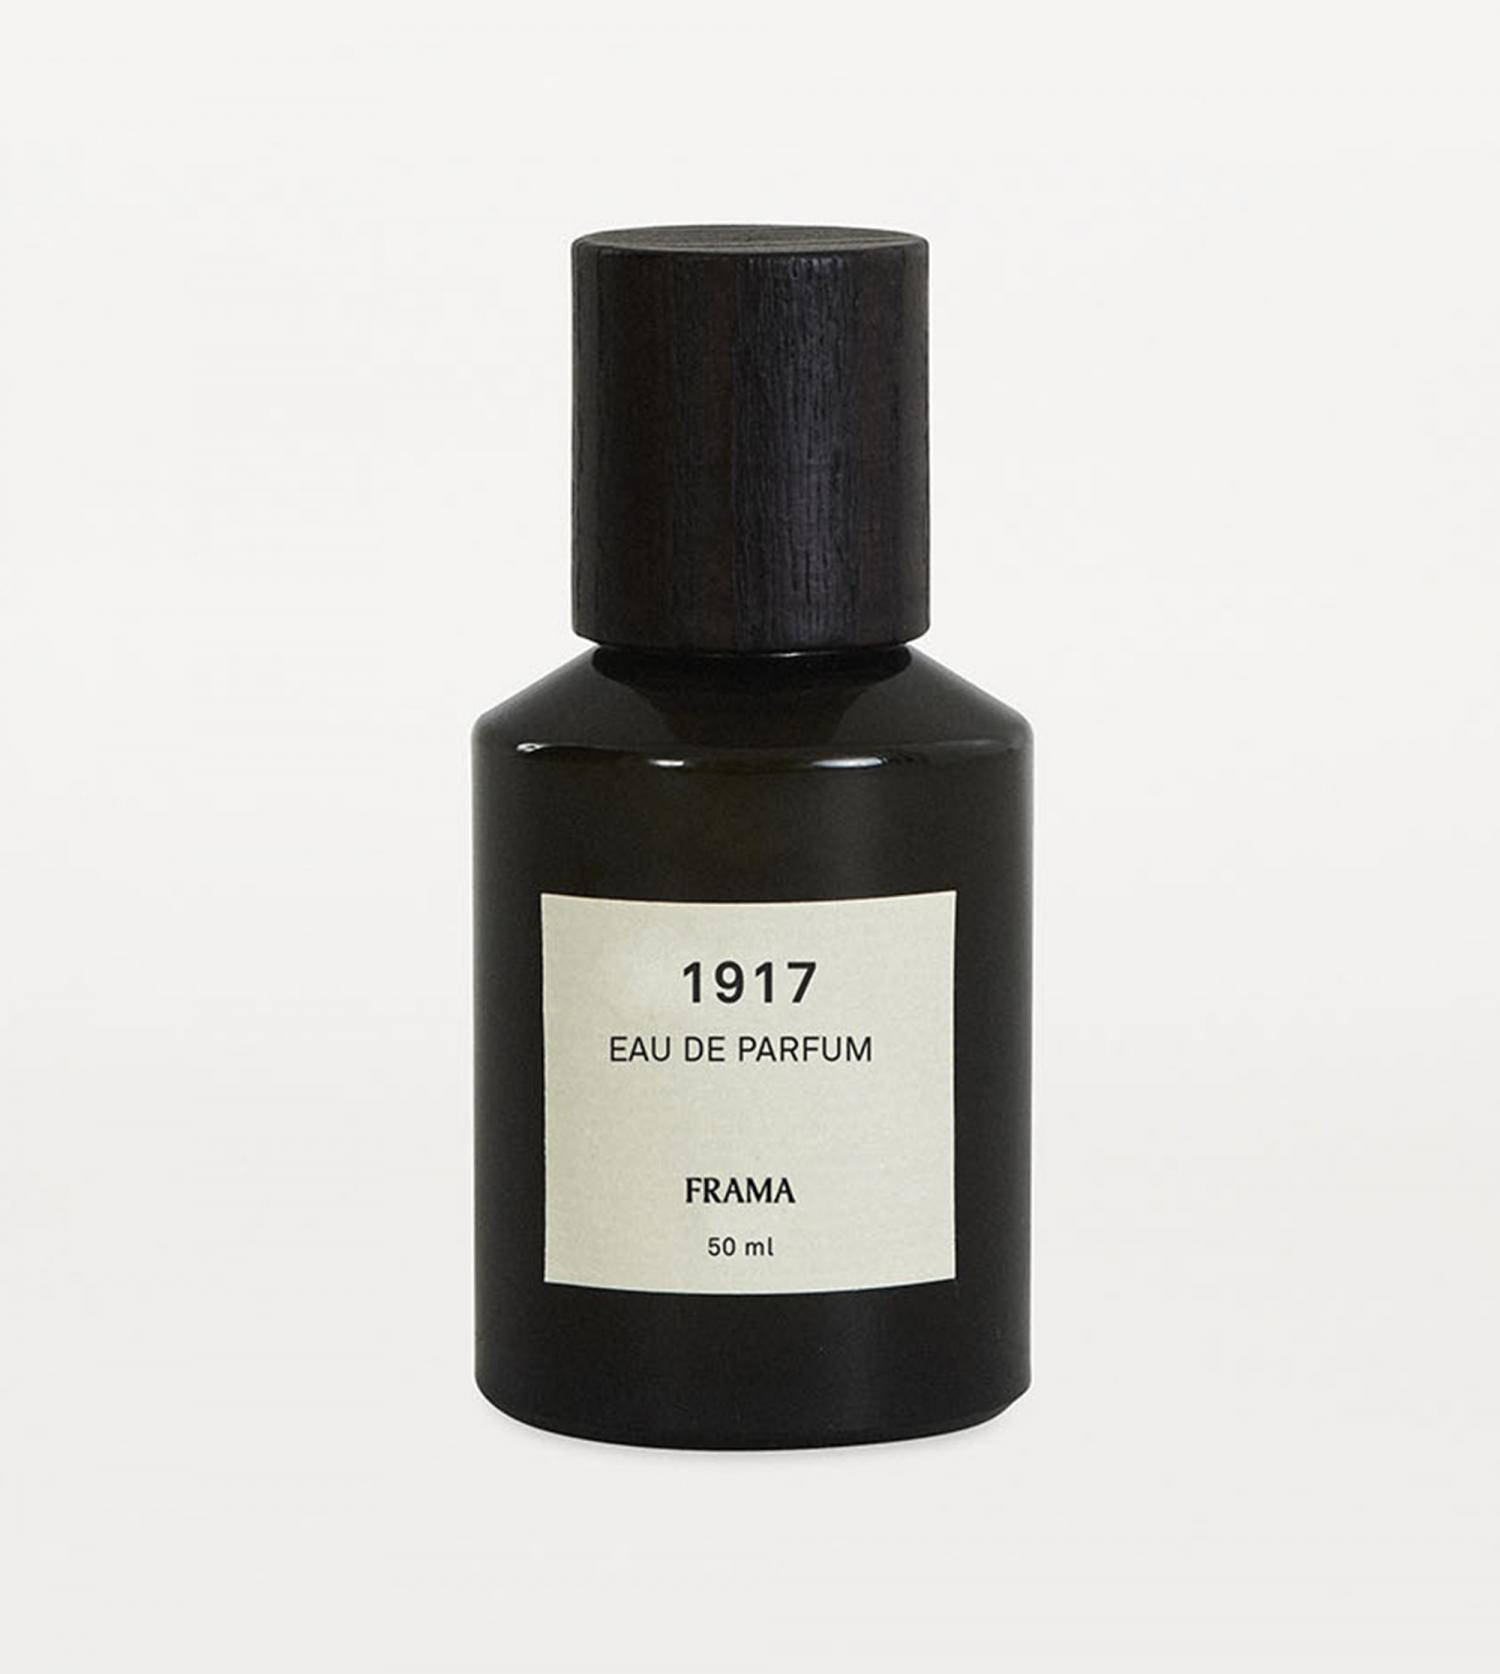 Eau de parfum 1917